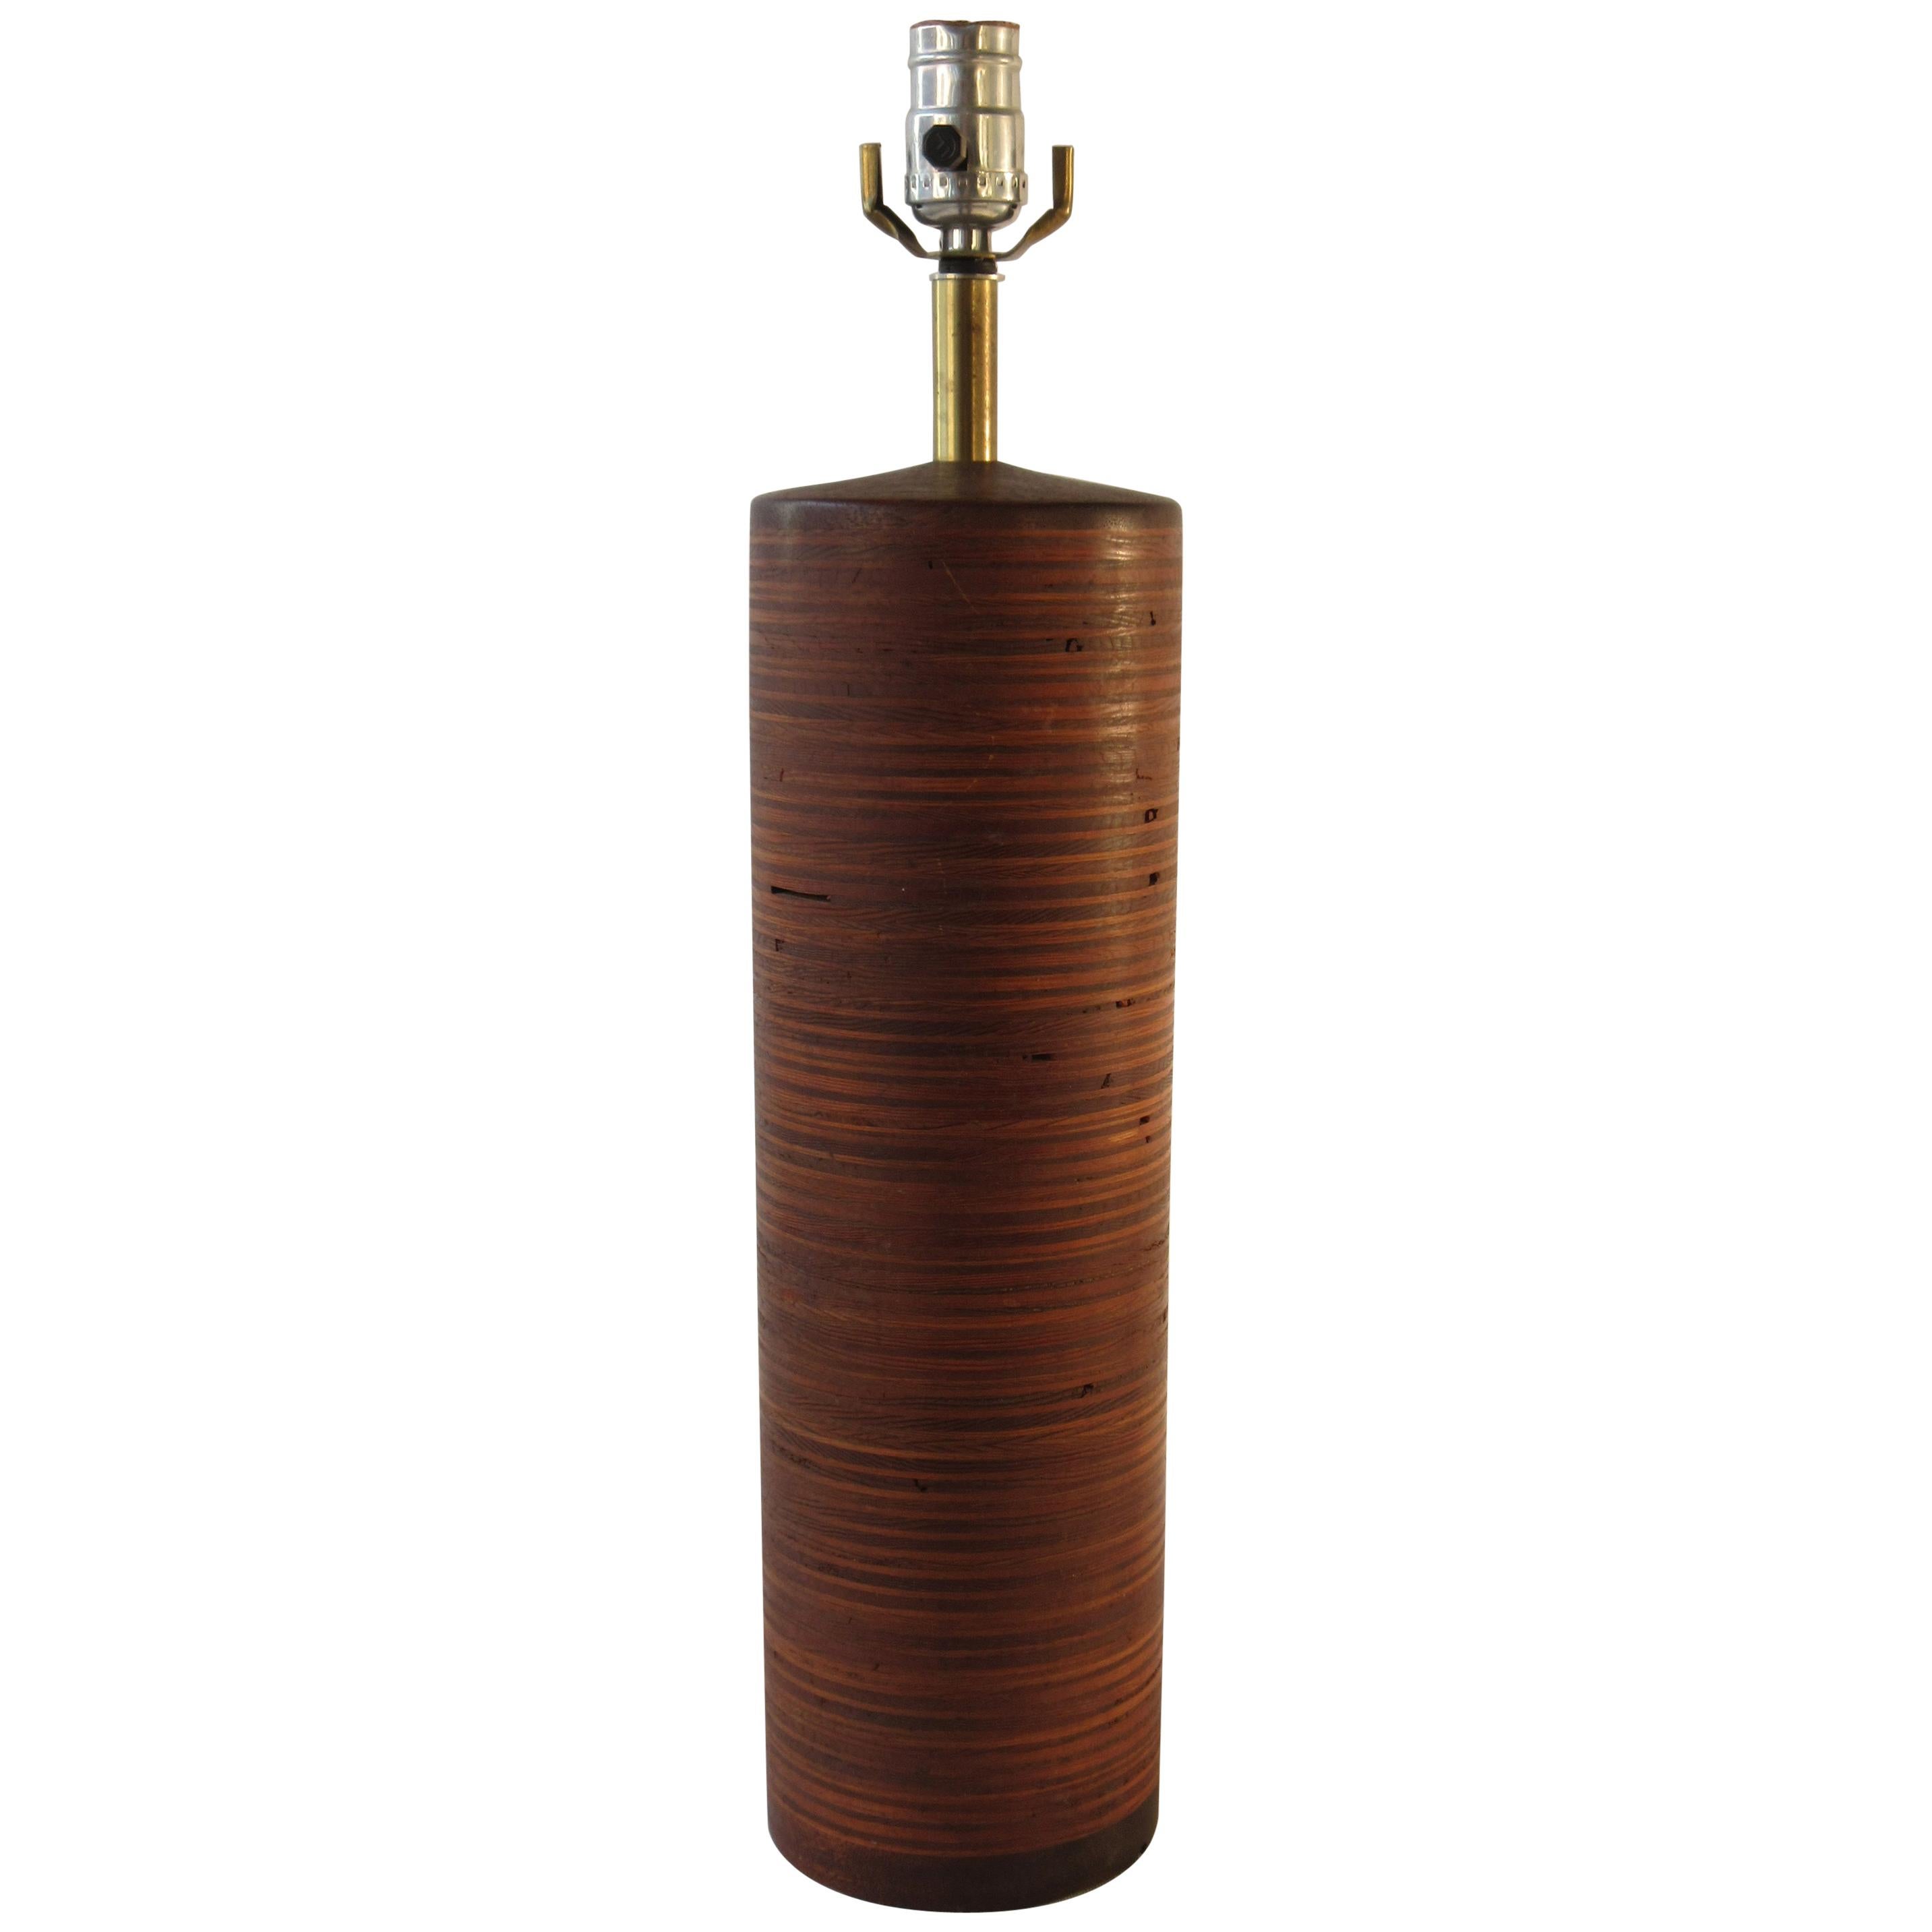 Zylindrische Lampe aus gestreiftem Holz, 1950er Jahre